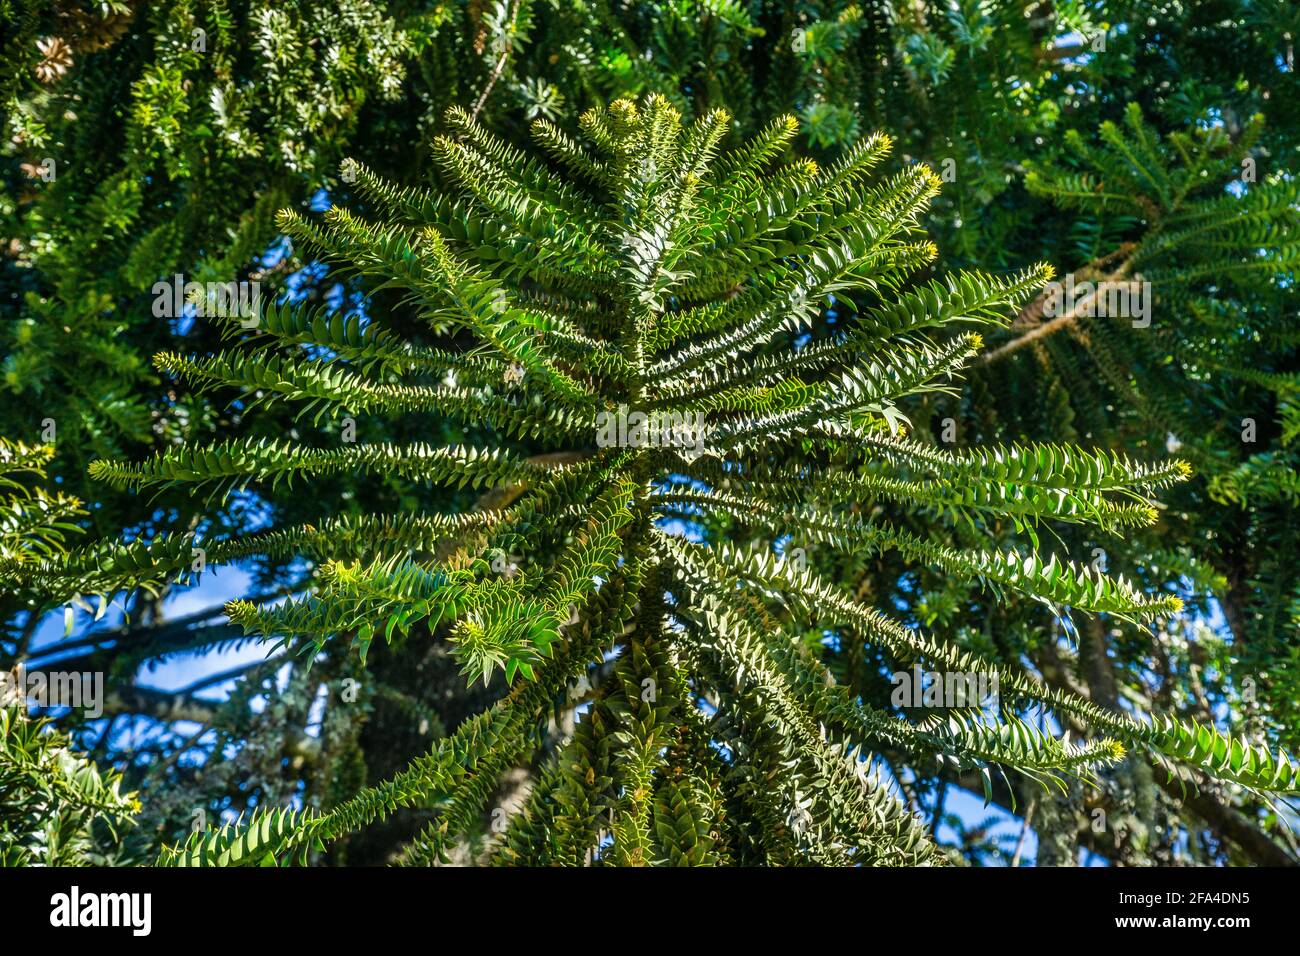 Las hojas puntiagudas del pino Bunya están arrayadas radialmente alrededor del ramal, Parque Nacional de las Montañas Bunya, Región de Burnett Sur, Queensland, Australia Foto de stock